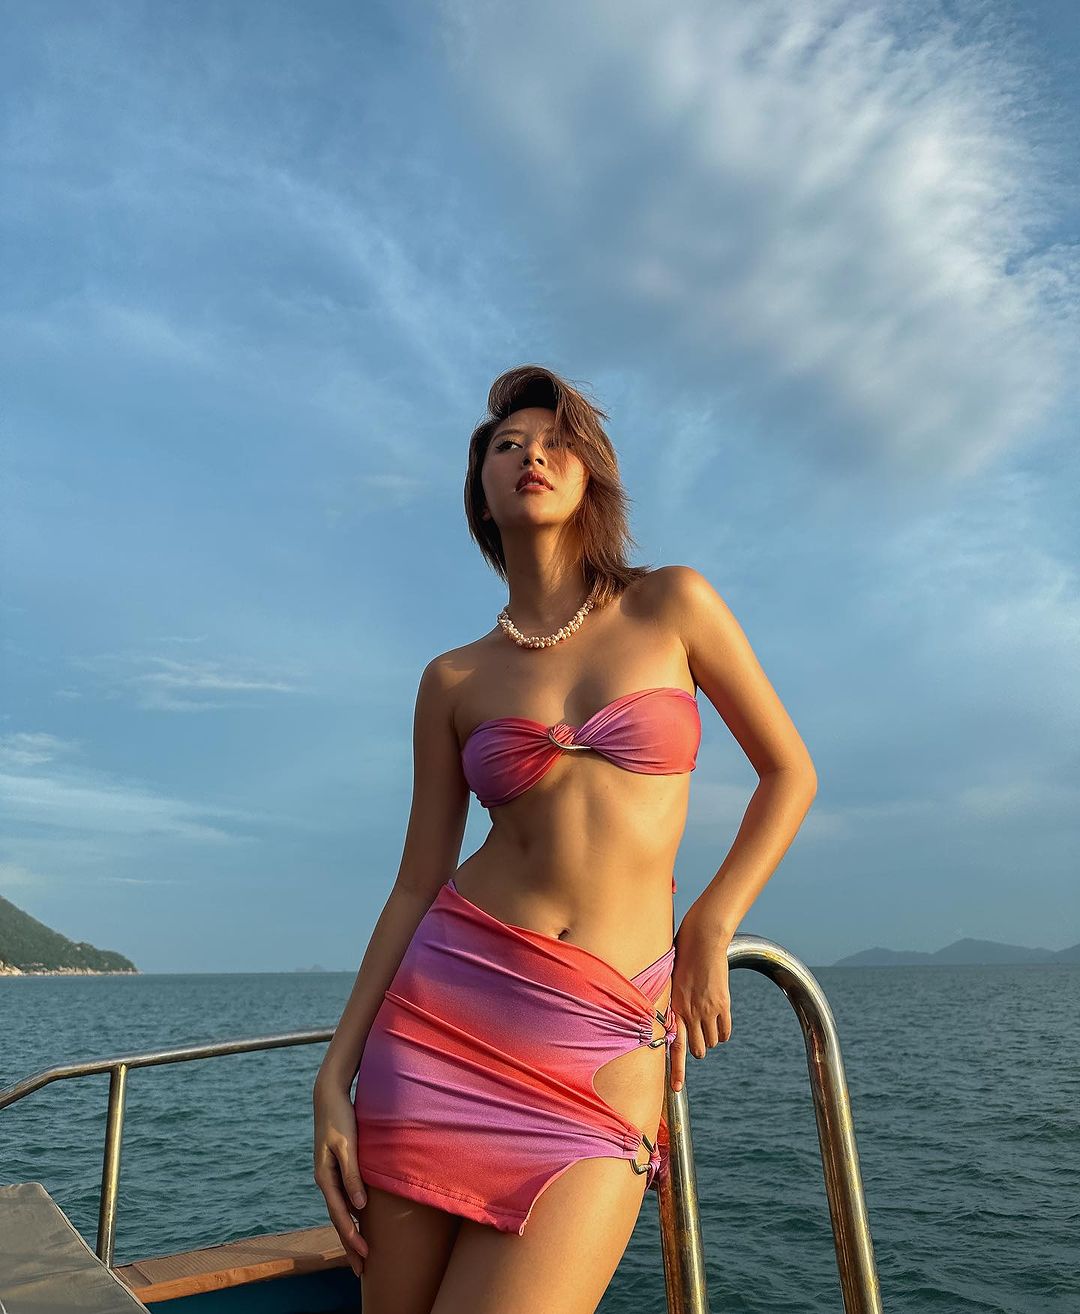 Fashionista Quỳnh Anh Shyn diện mẫu bikini phong cách Coconut Girl đi biển (Ảnh: @quynhanhshyn_)